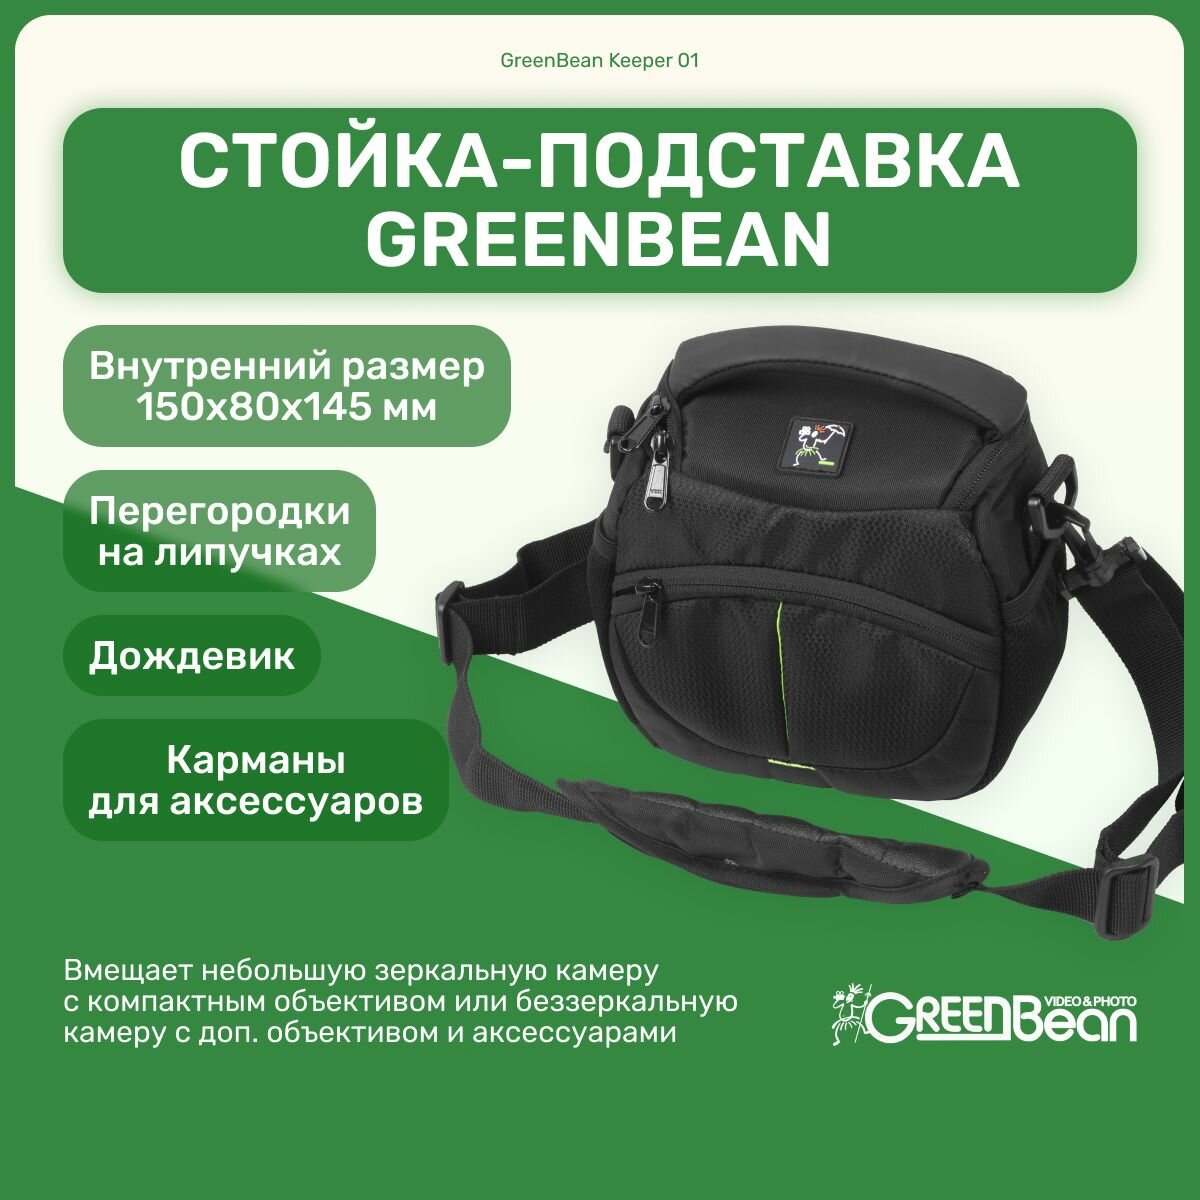 Сумка Keeper GreenBean 01 для фотоаппарата, видеотехники, аксессуары для фото и видео съемки